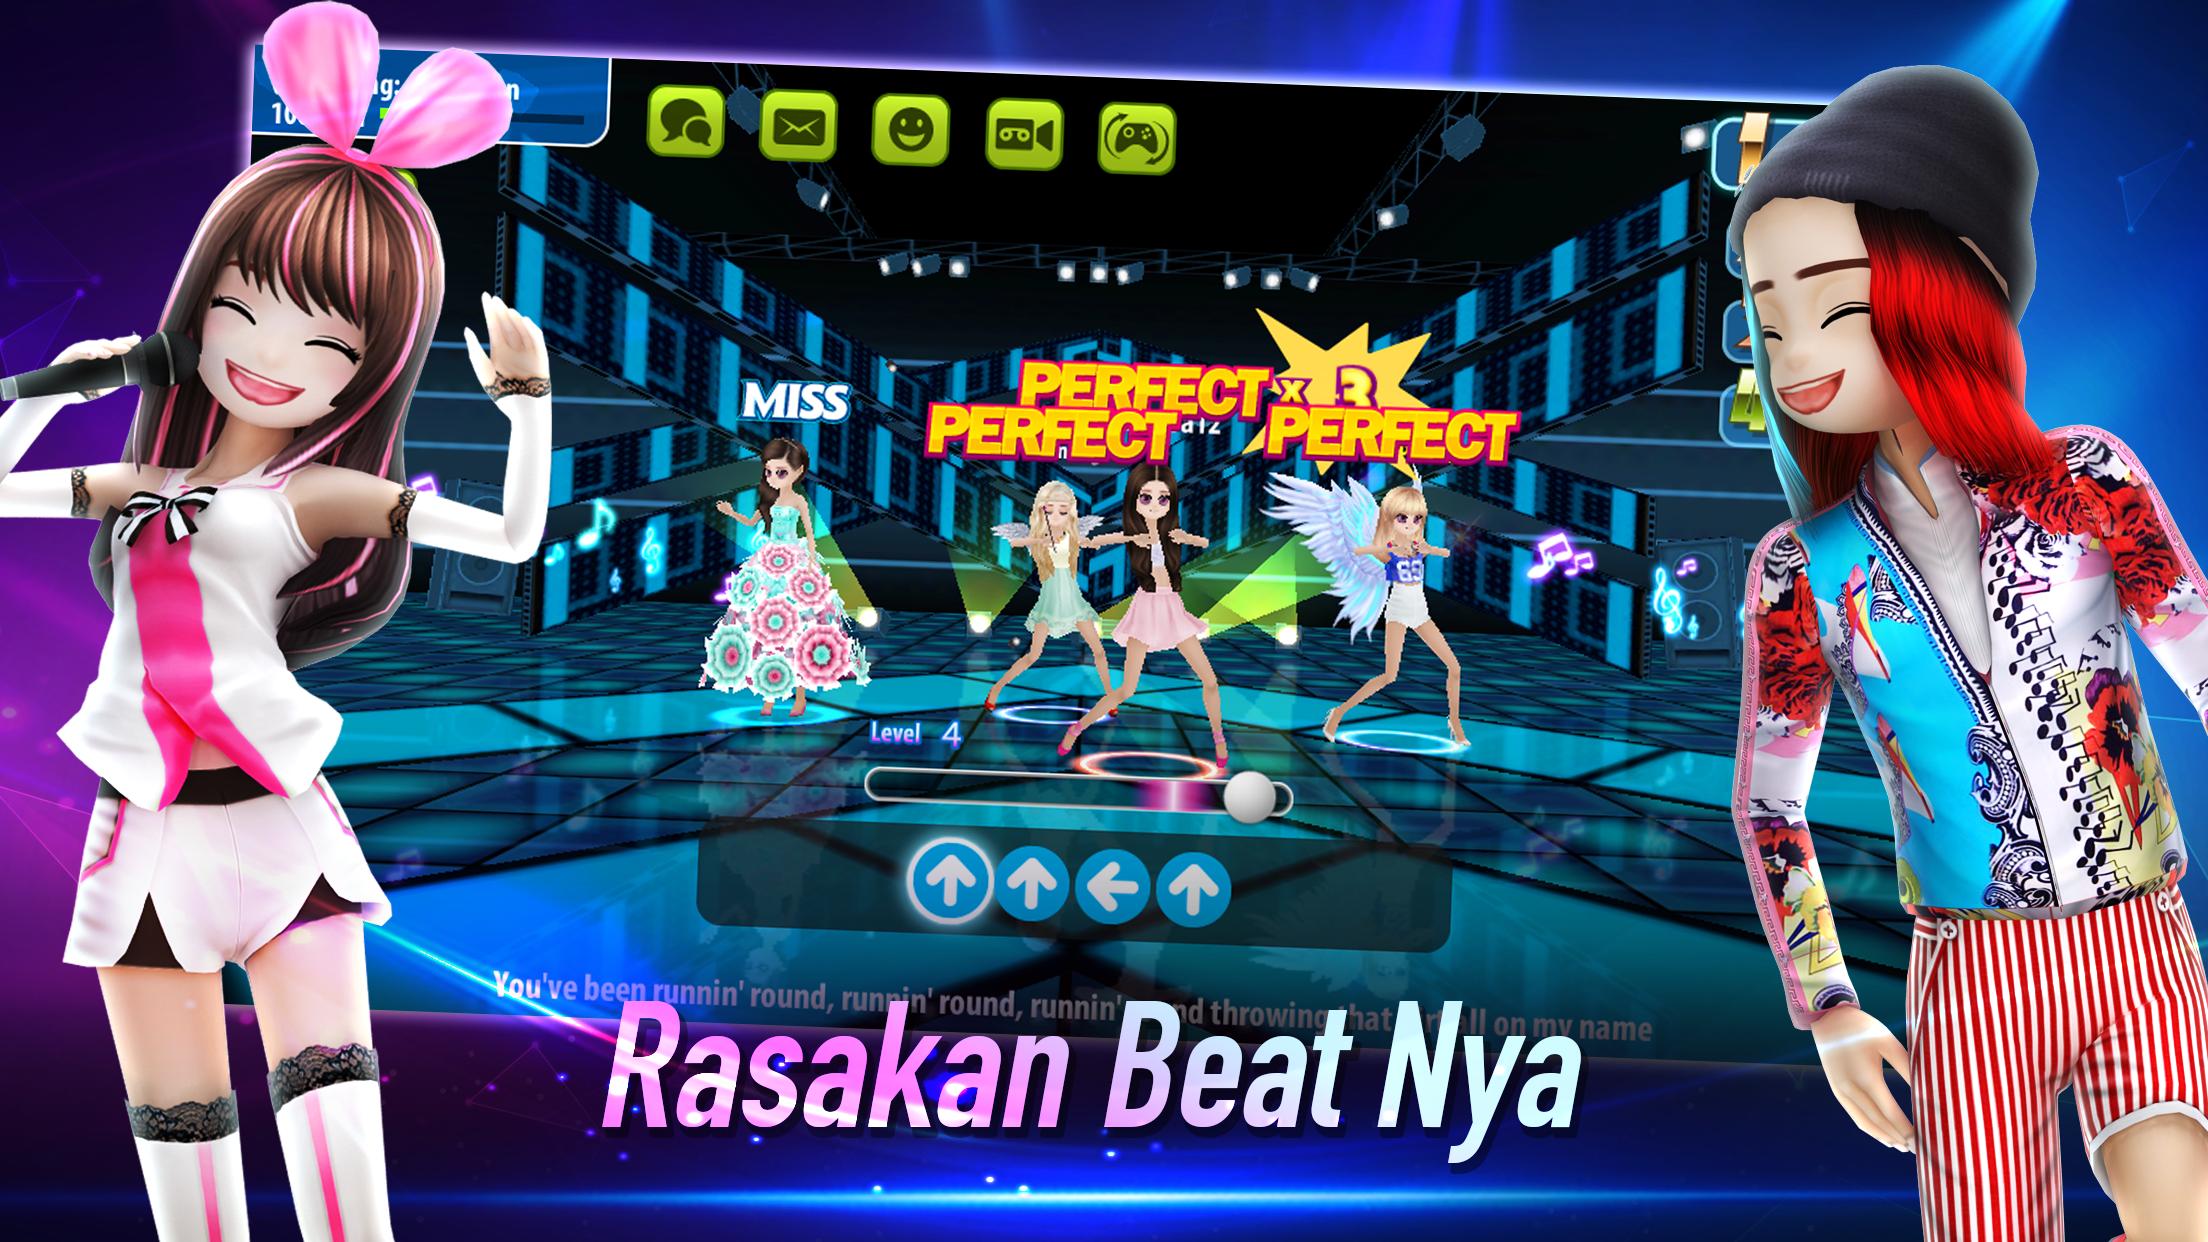 AVATAR MUSIK INDONESIA - Social Dancing Game 1.0.1 Screenshot 10